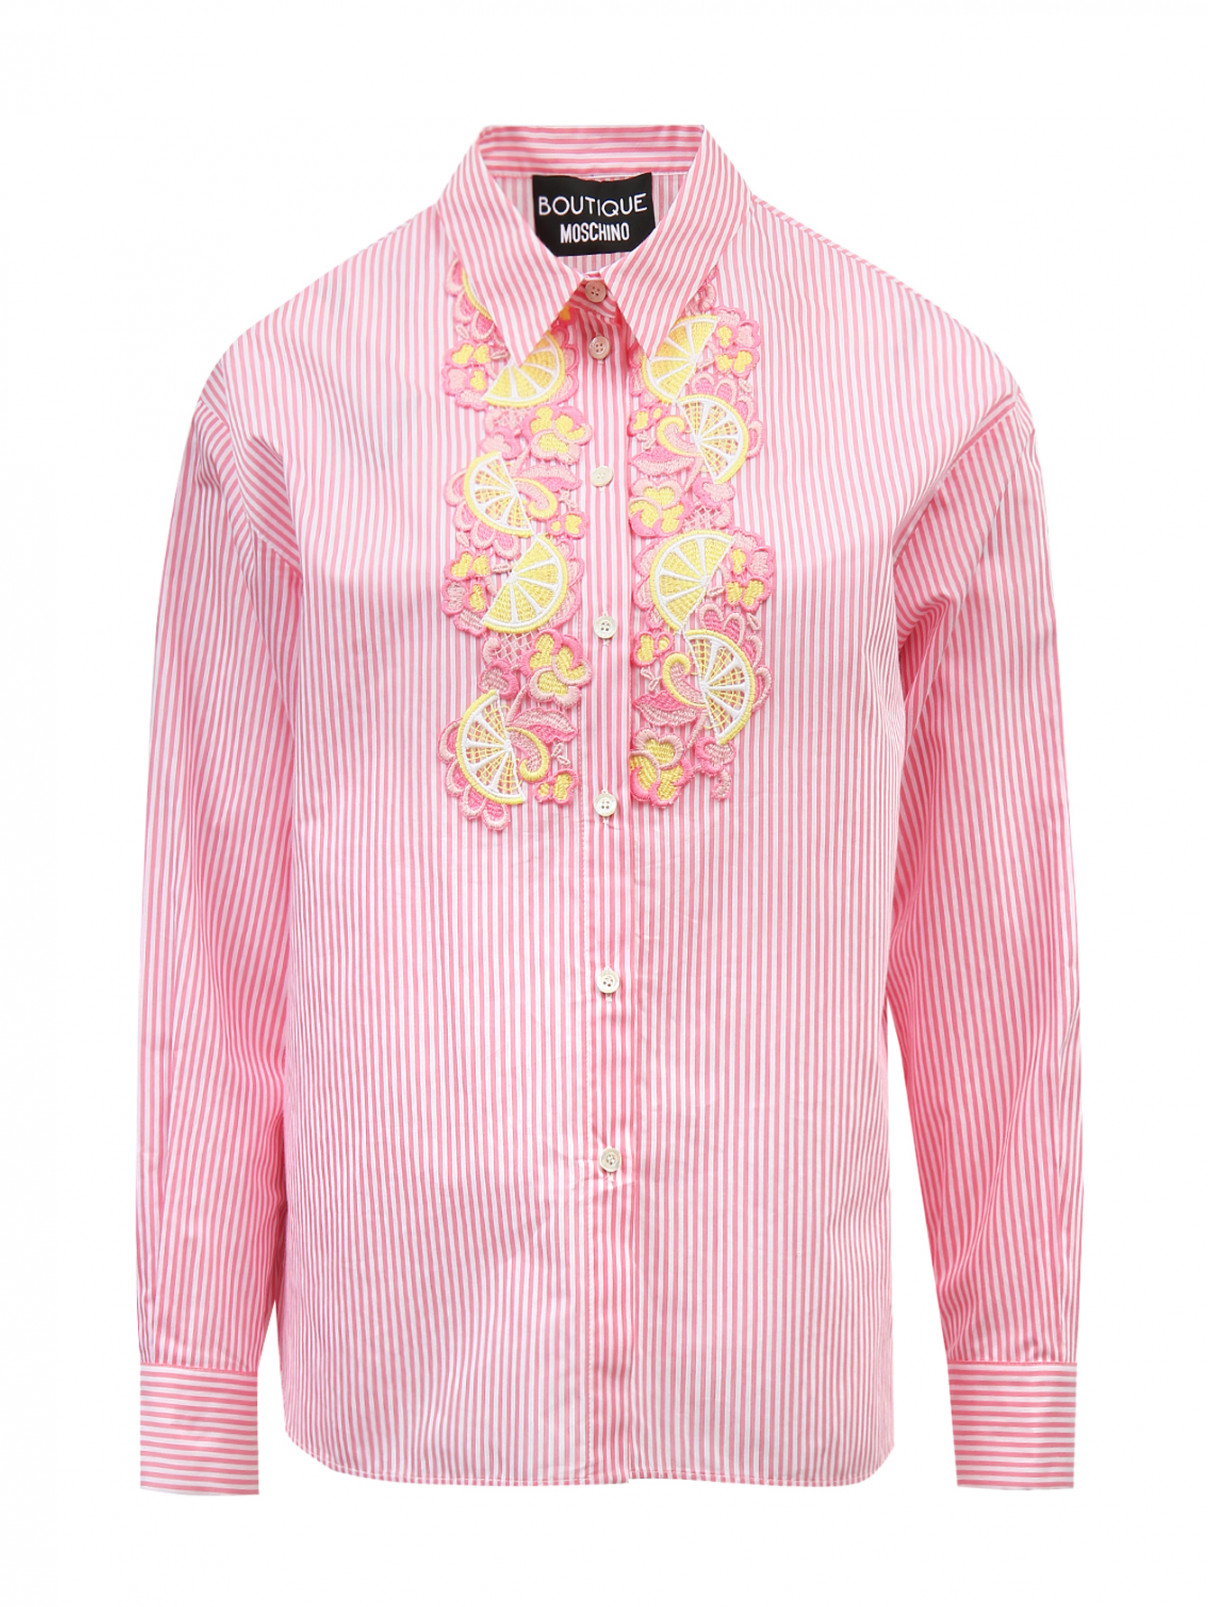 Блуза из хлопка и шелка с  аппликацией на груди Moschino Boutique  –  Общий вид  – Цвет:  Розовый